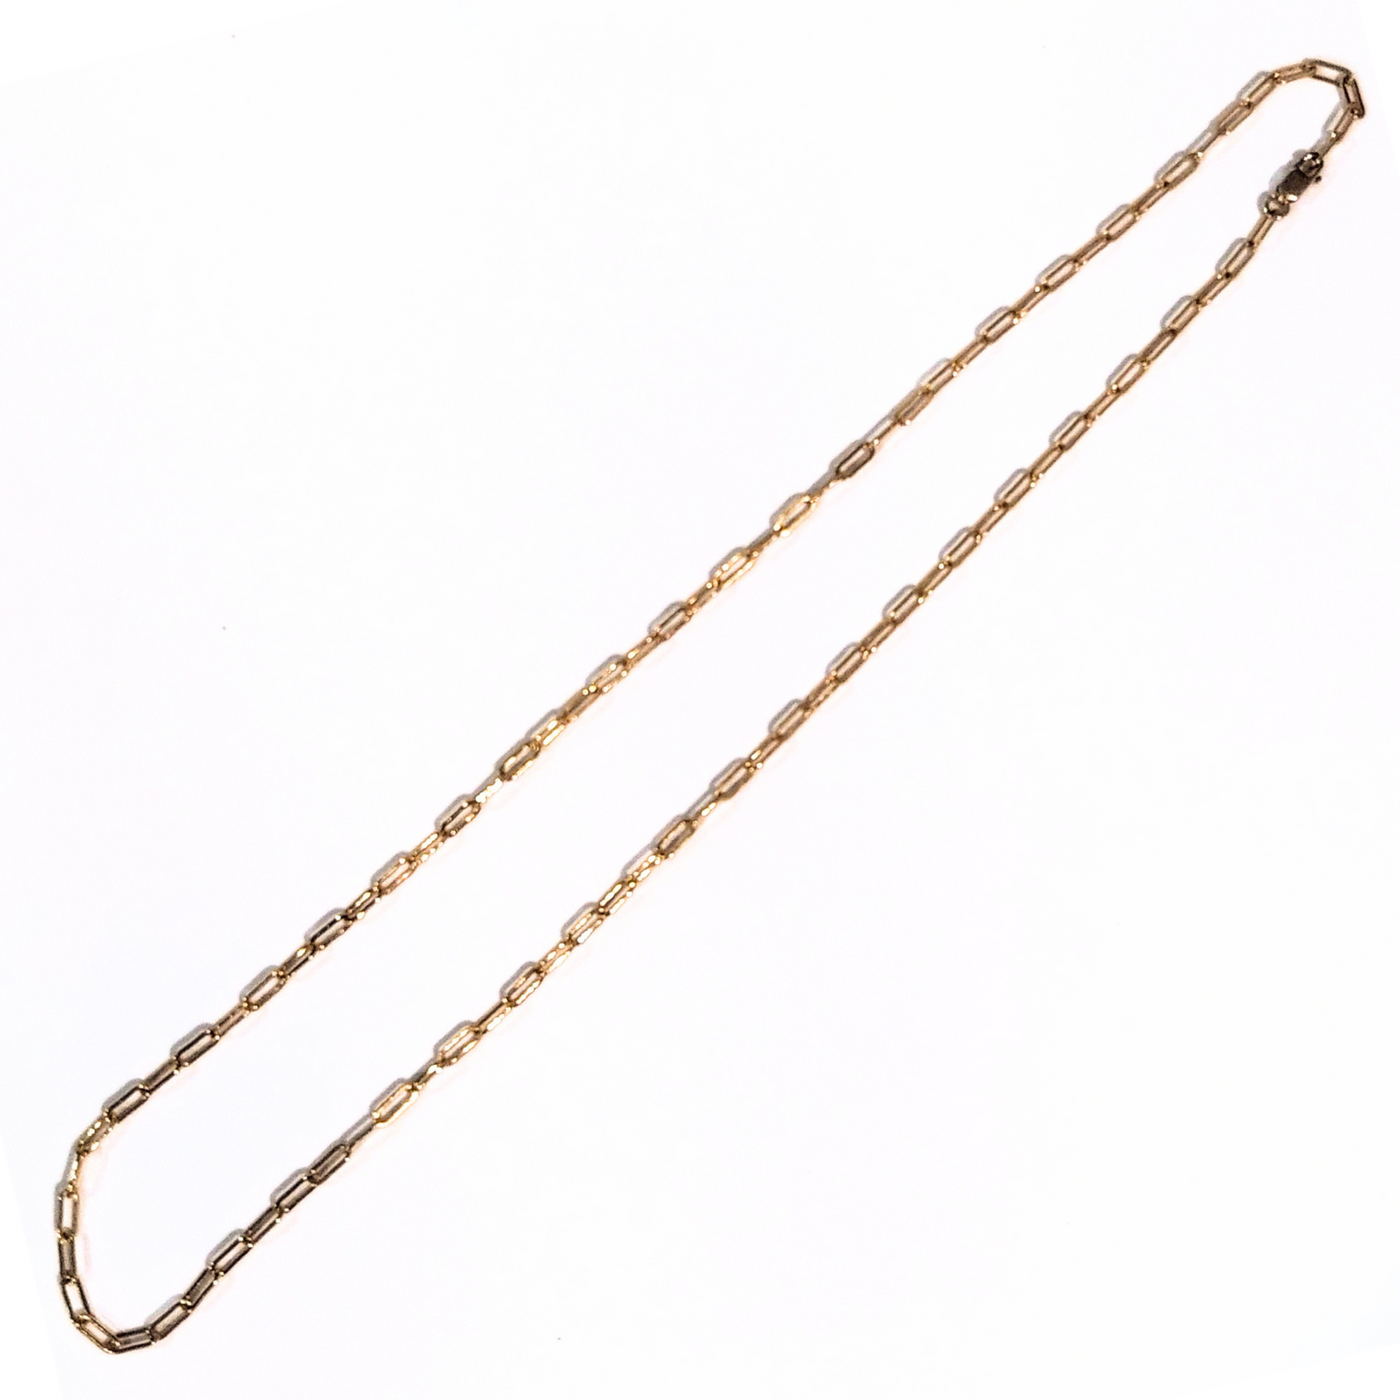 DJT-015- Paper Clip Necklace Gold Filled